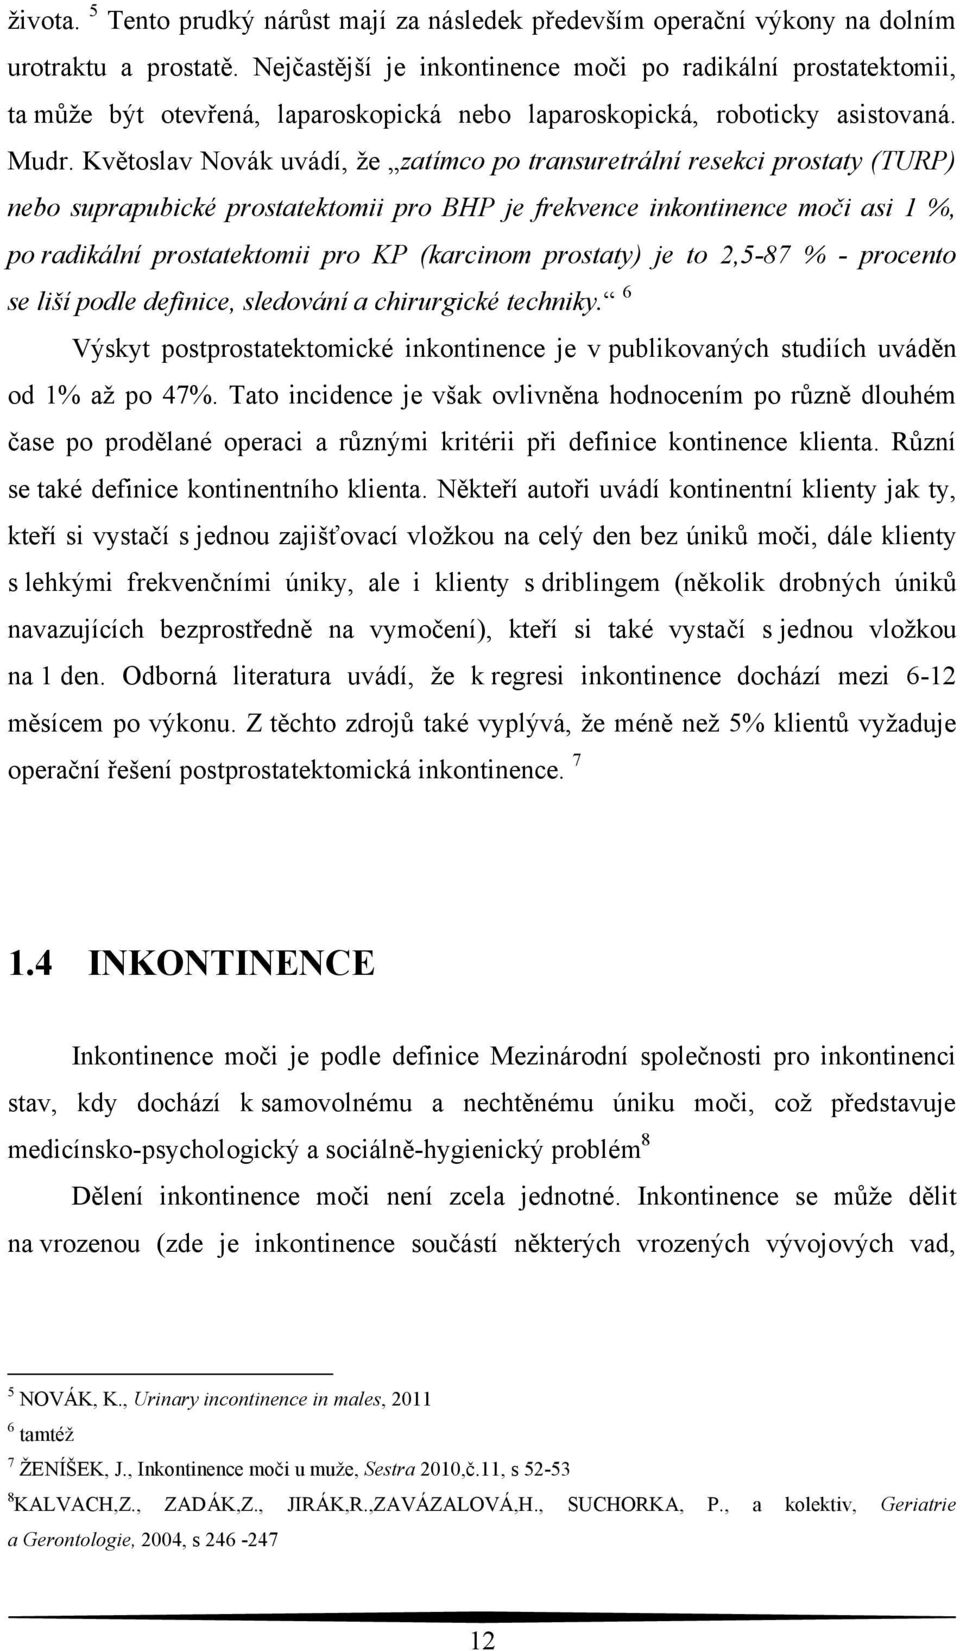 Květoslav Novák uvádí, ţe zatímco po transuretrální resekci prostaty (TURP) nebo suprapubické prostatektomii pro BHP je frekvence inkontinence moči asi 1 %, po radikální prostatektomii pro KP